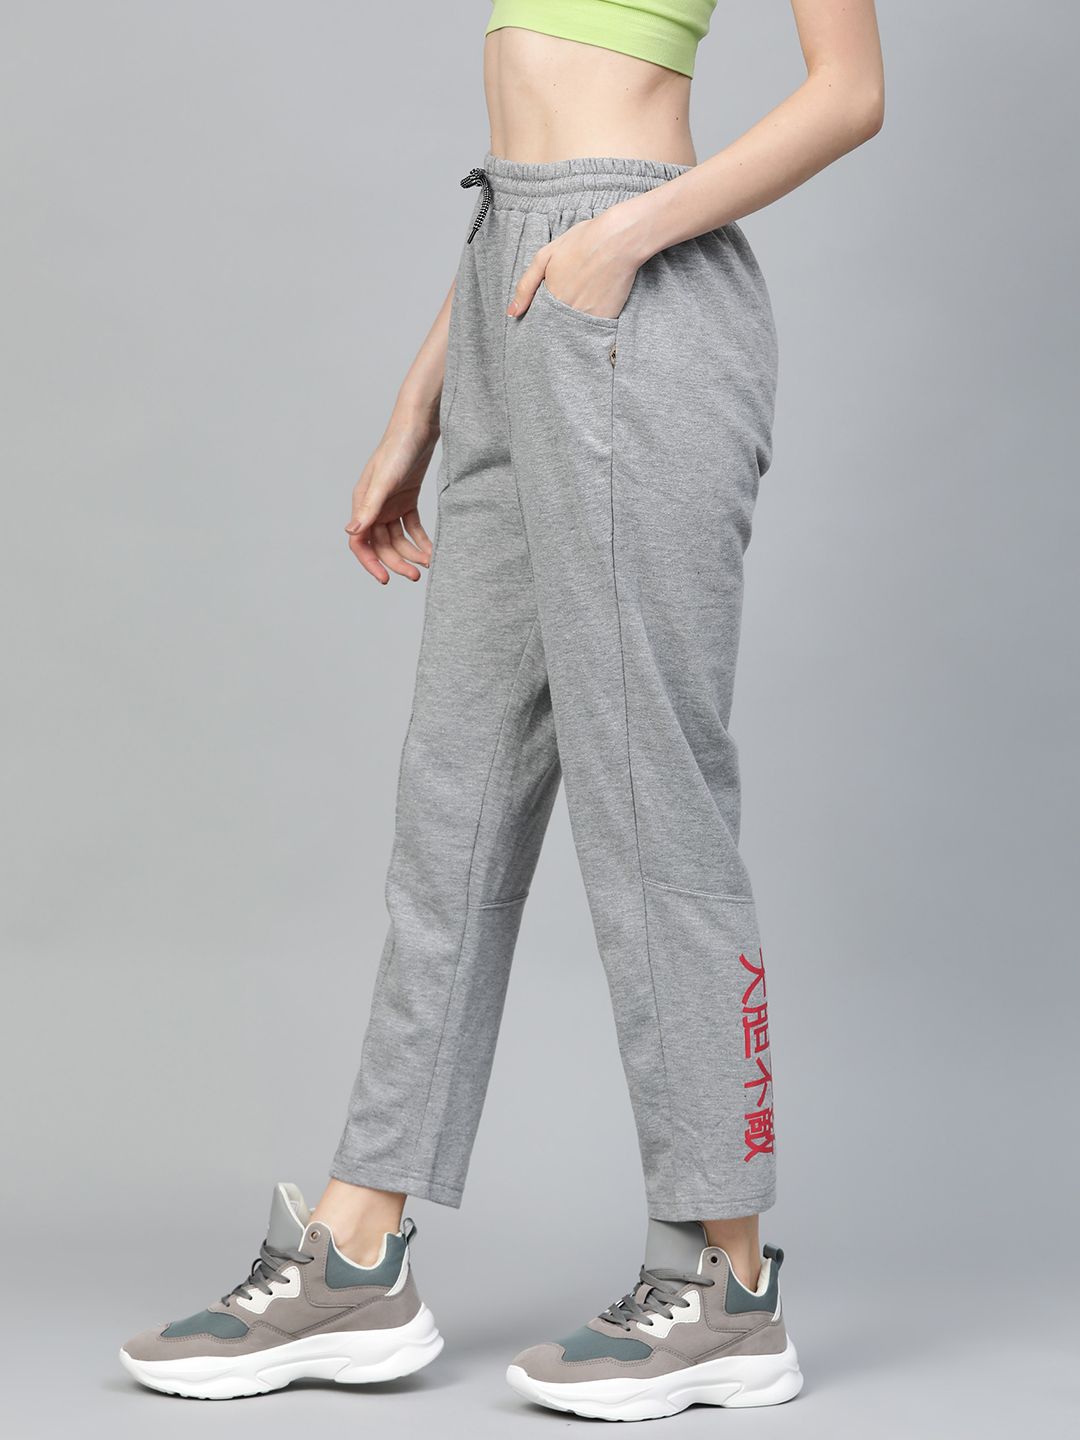 Hubberholme Women Grey Melange Slim Fit Solid Tracks Pants Price in India